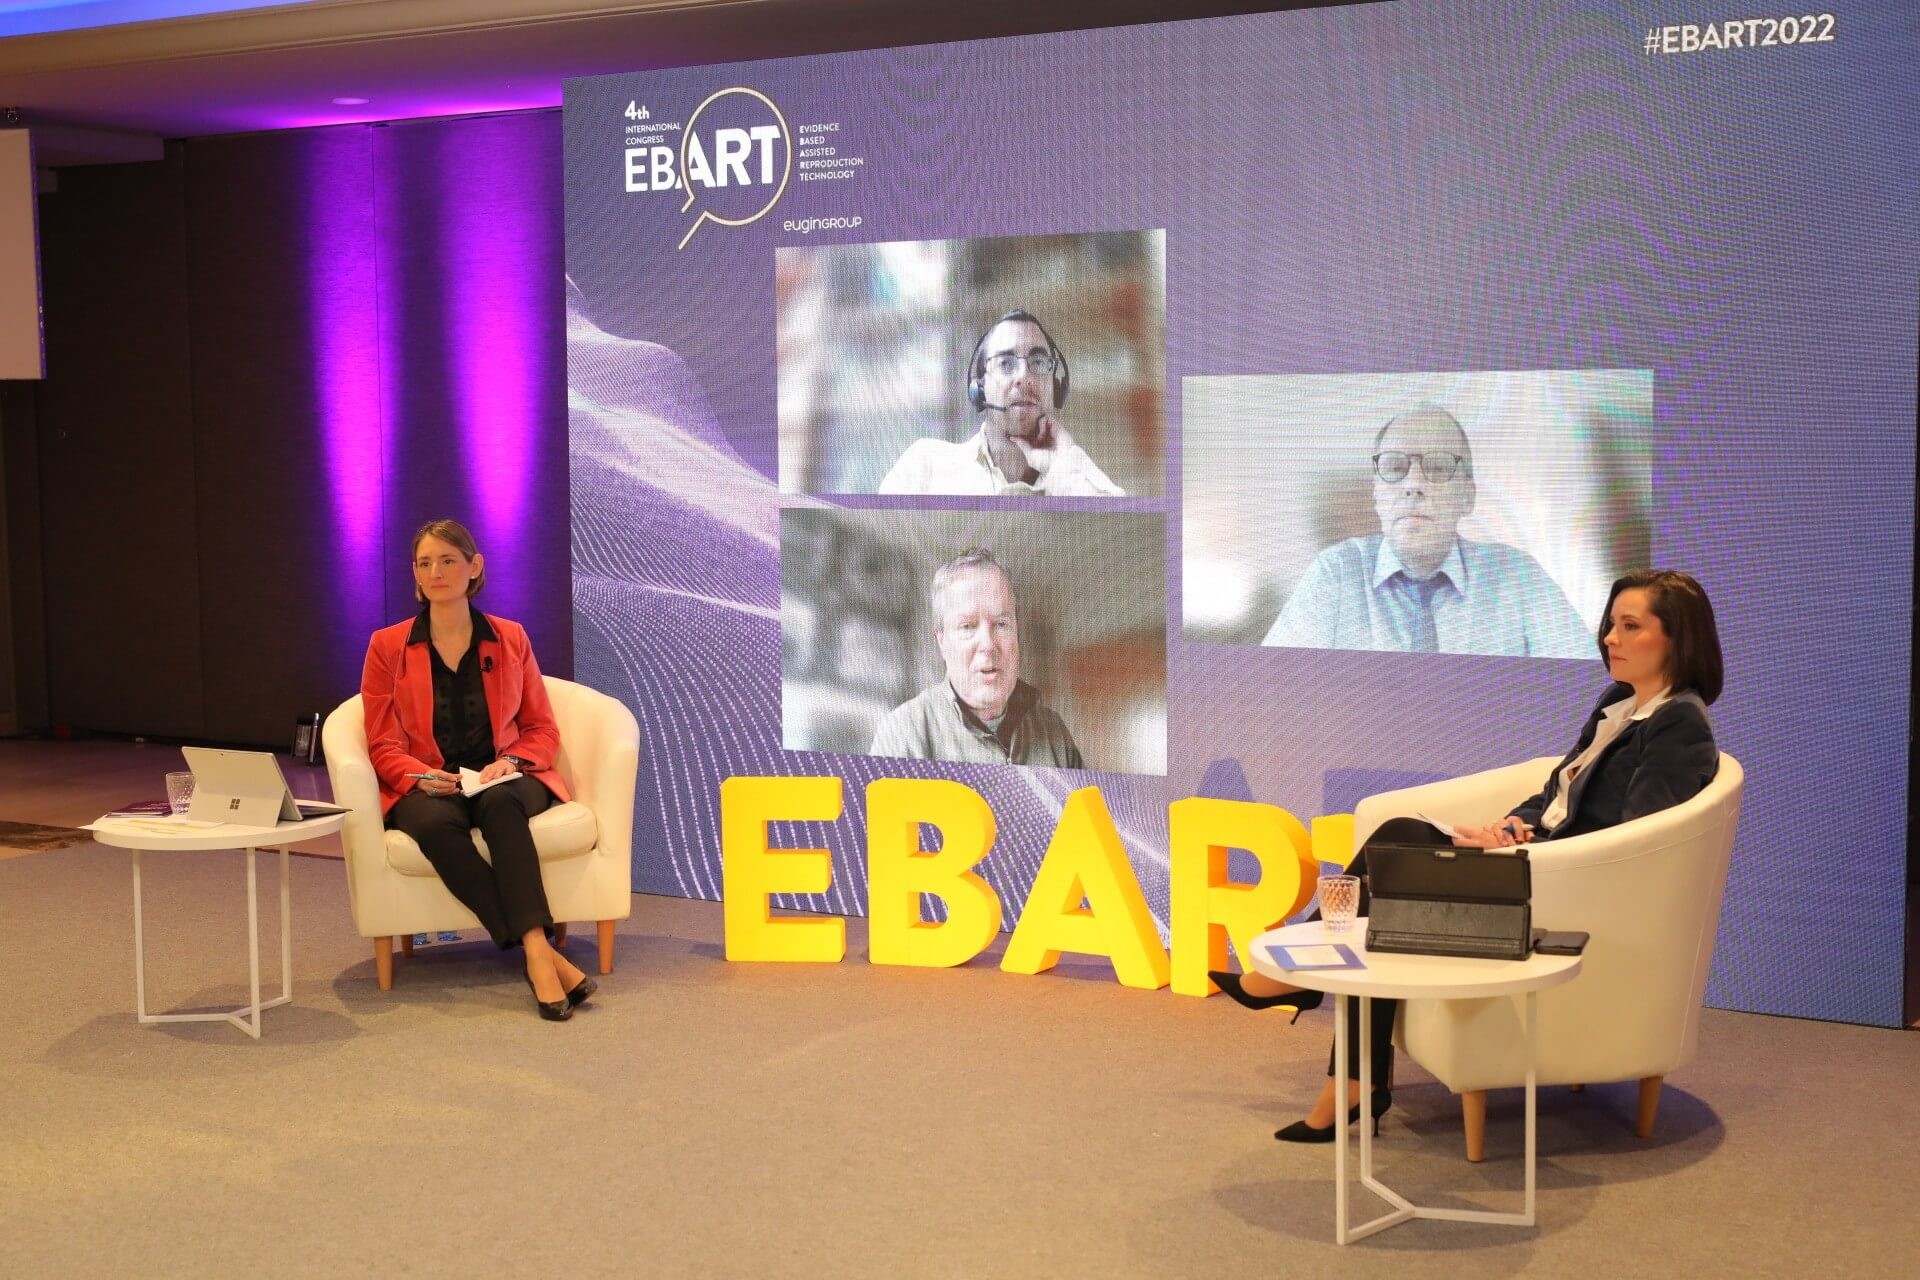 Congrès scientifique EBART 2022 du Groupe Eugin